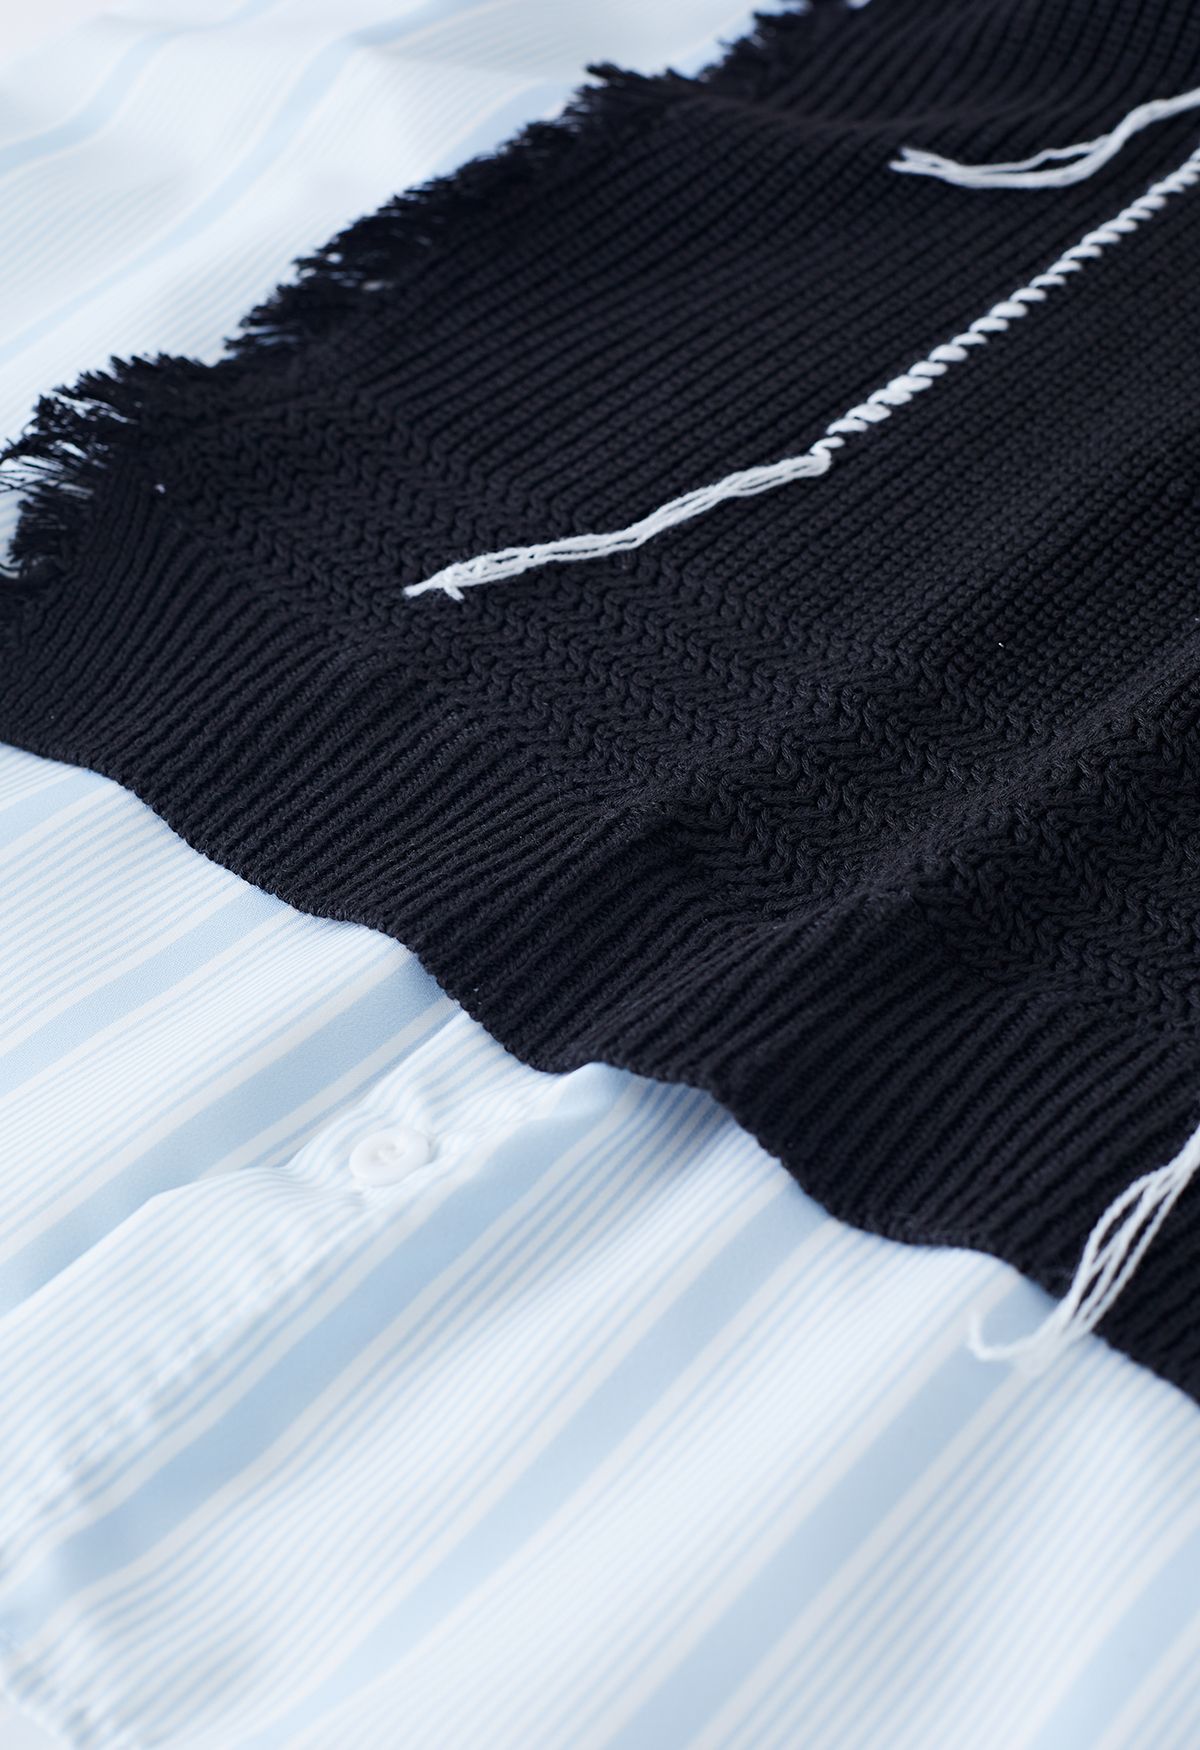 Chemise oversize rayée épissée en tricot avec détails effilochés en noir